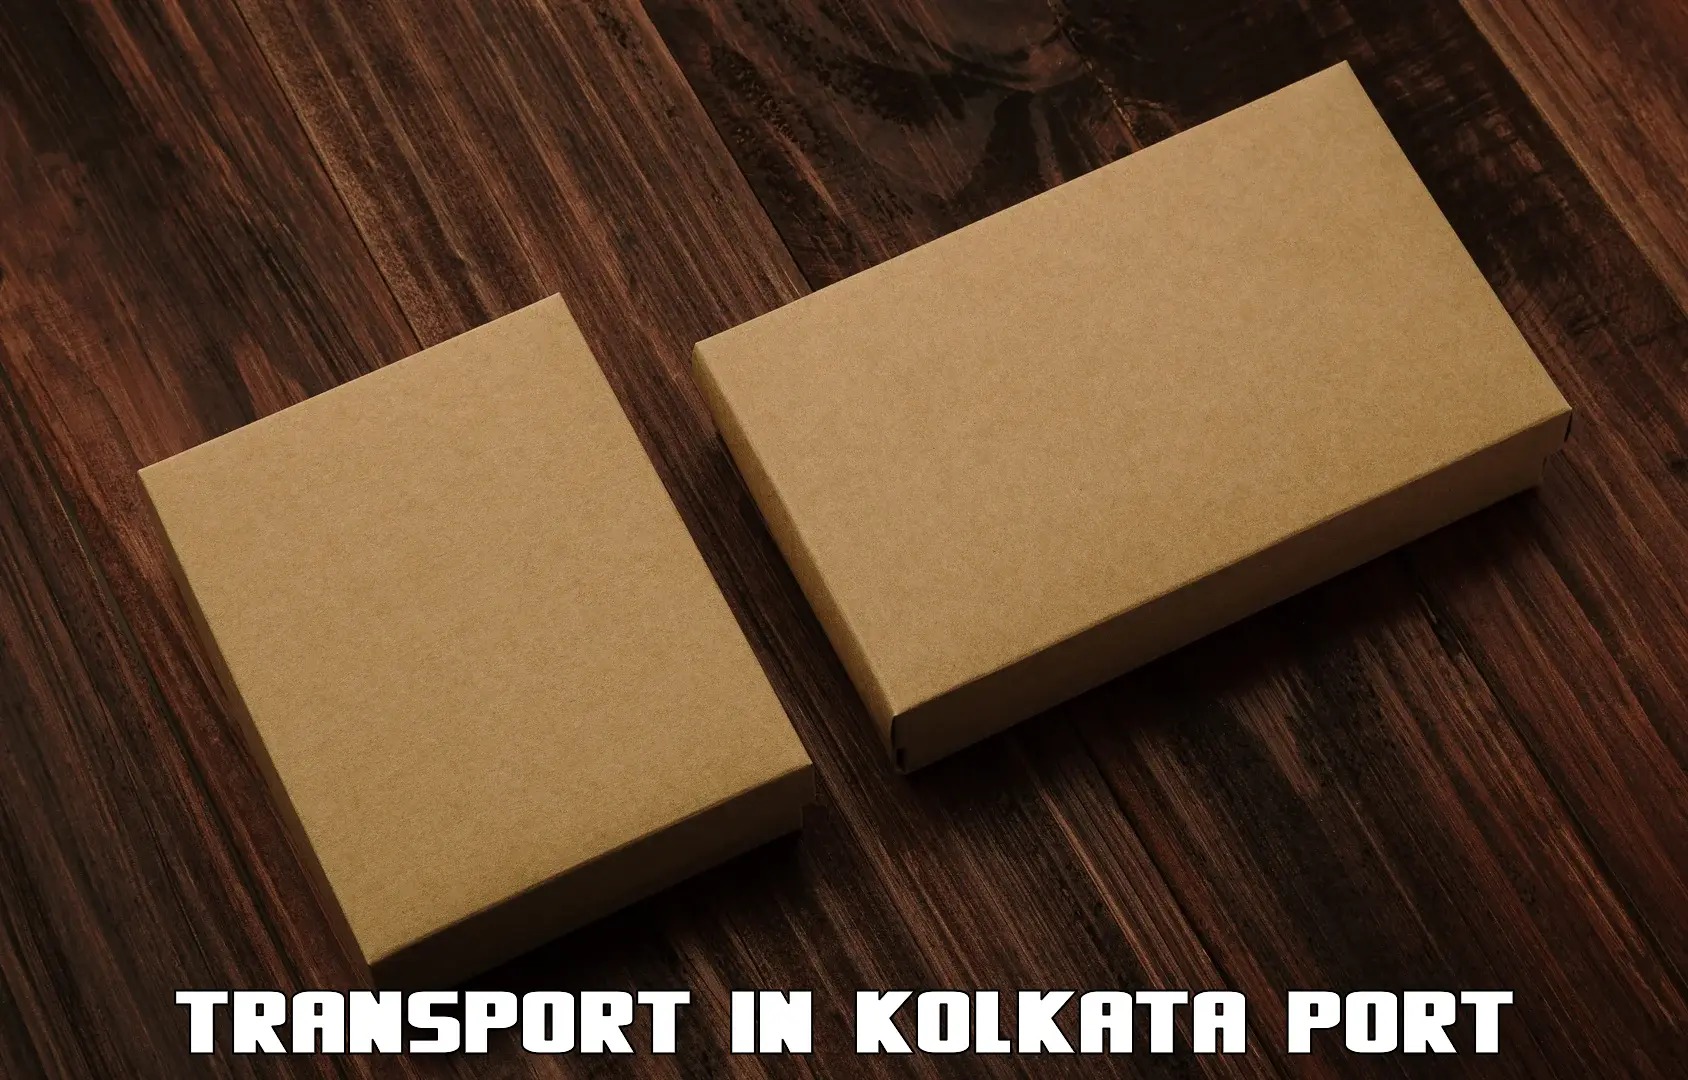 Transportation solution services in Kolkata Port